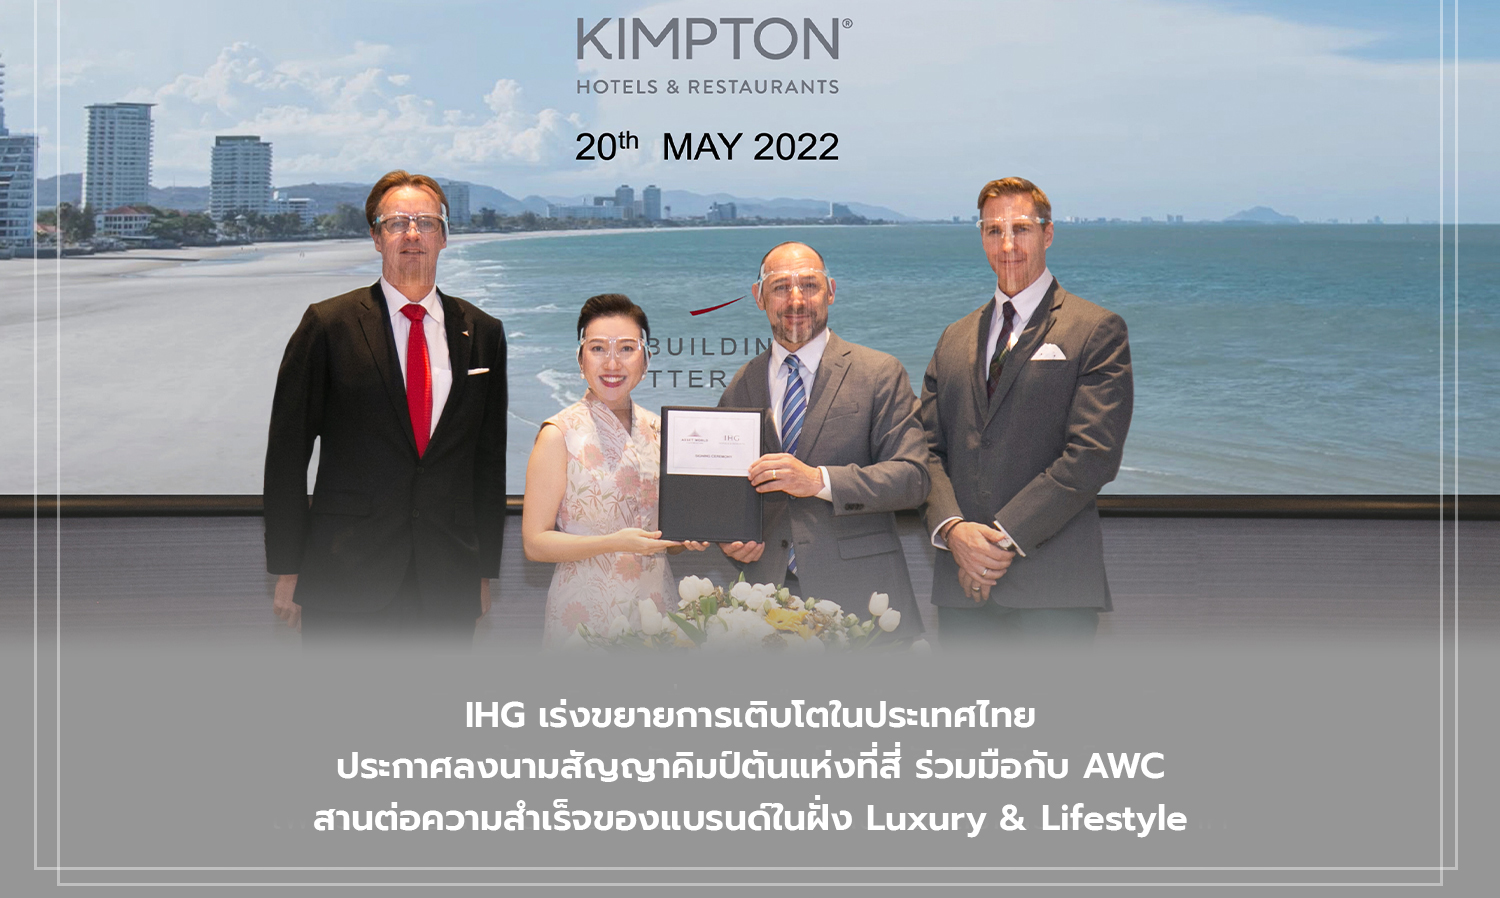 ihg-เร่งขยายการเติบโตในประเทศไทย-ประกาศลงนามสัญญาคิมป์ตันแห่งที่สี่-ร่วมมือกับ-awc-สานต่อความสำเร็จของแบรนด์ในฝั่ง-luxury-lifestyle